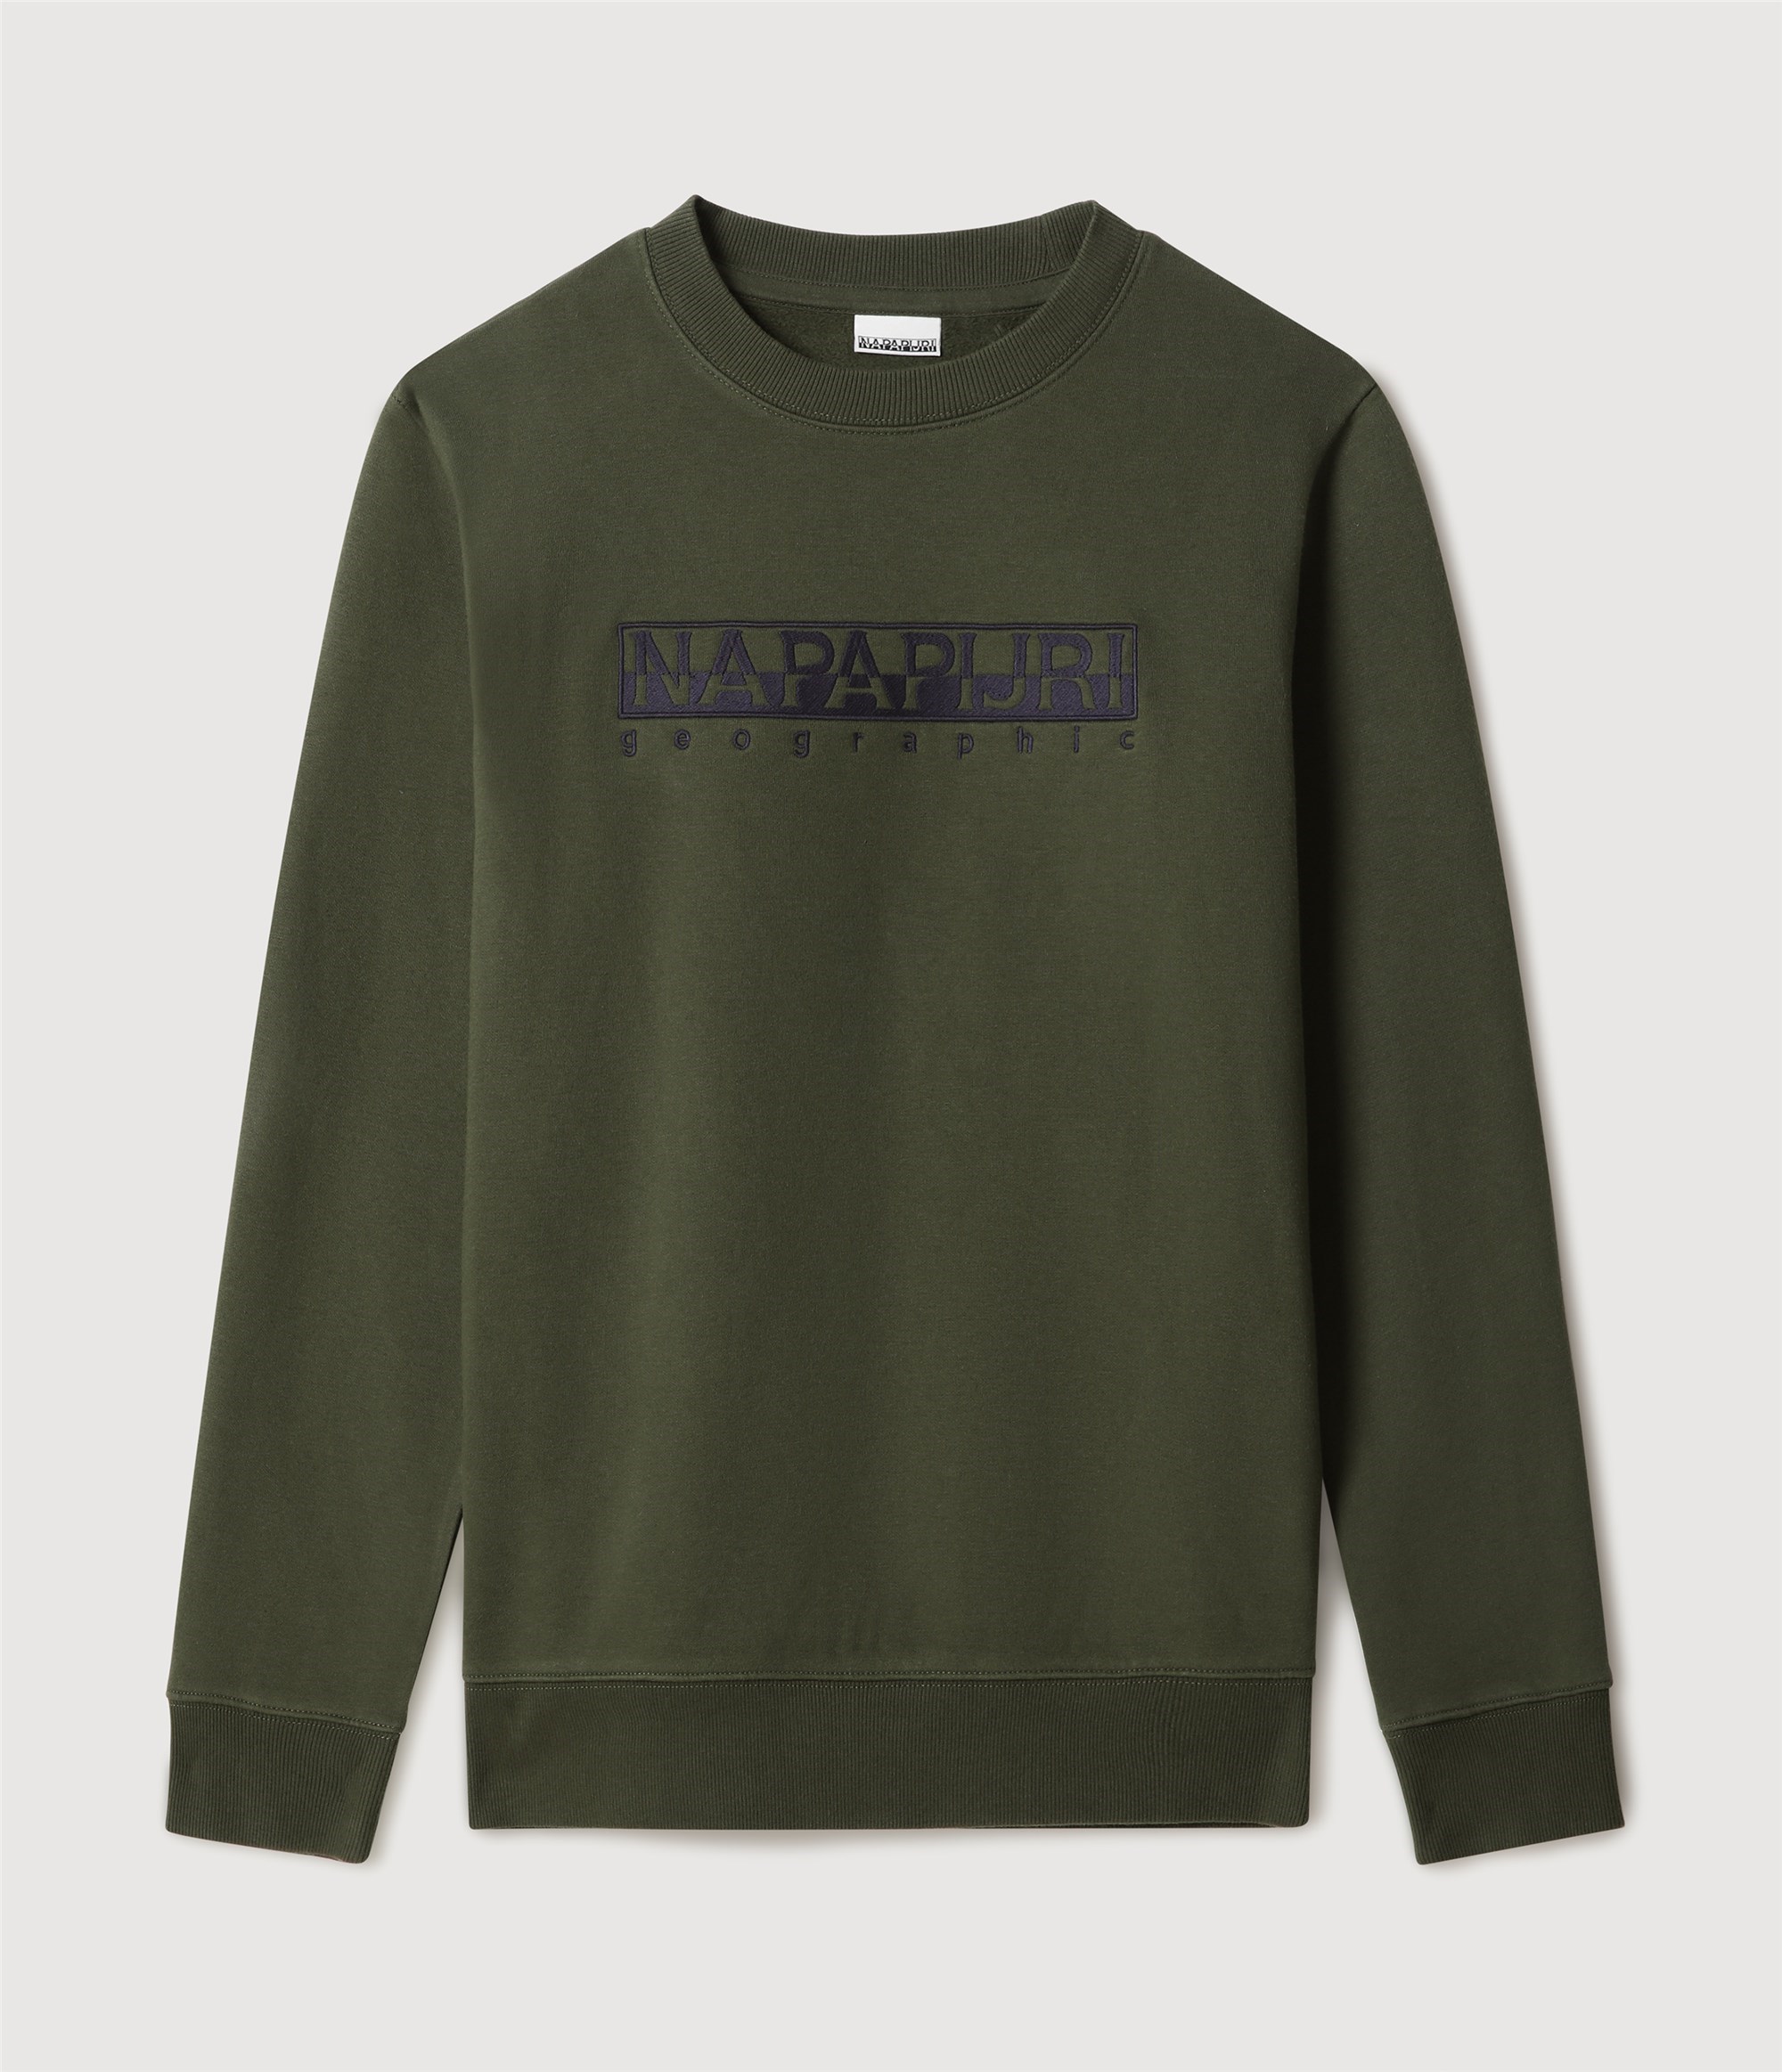 NAPAPIJRI Sweatshirt Herren grün Cotone - Cotton günstig online kaufen